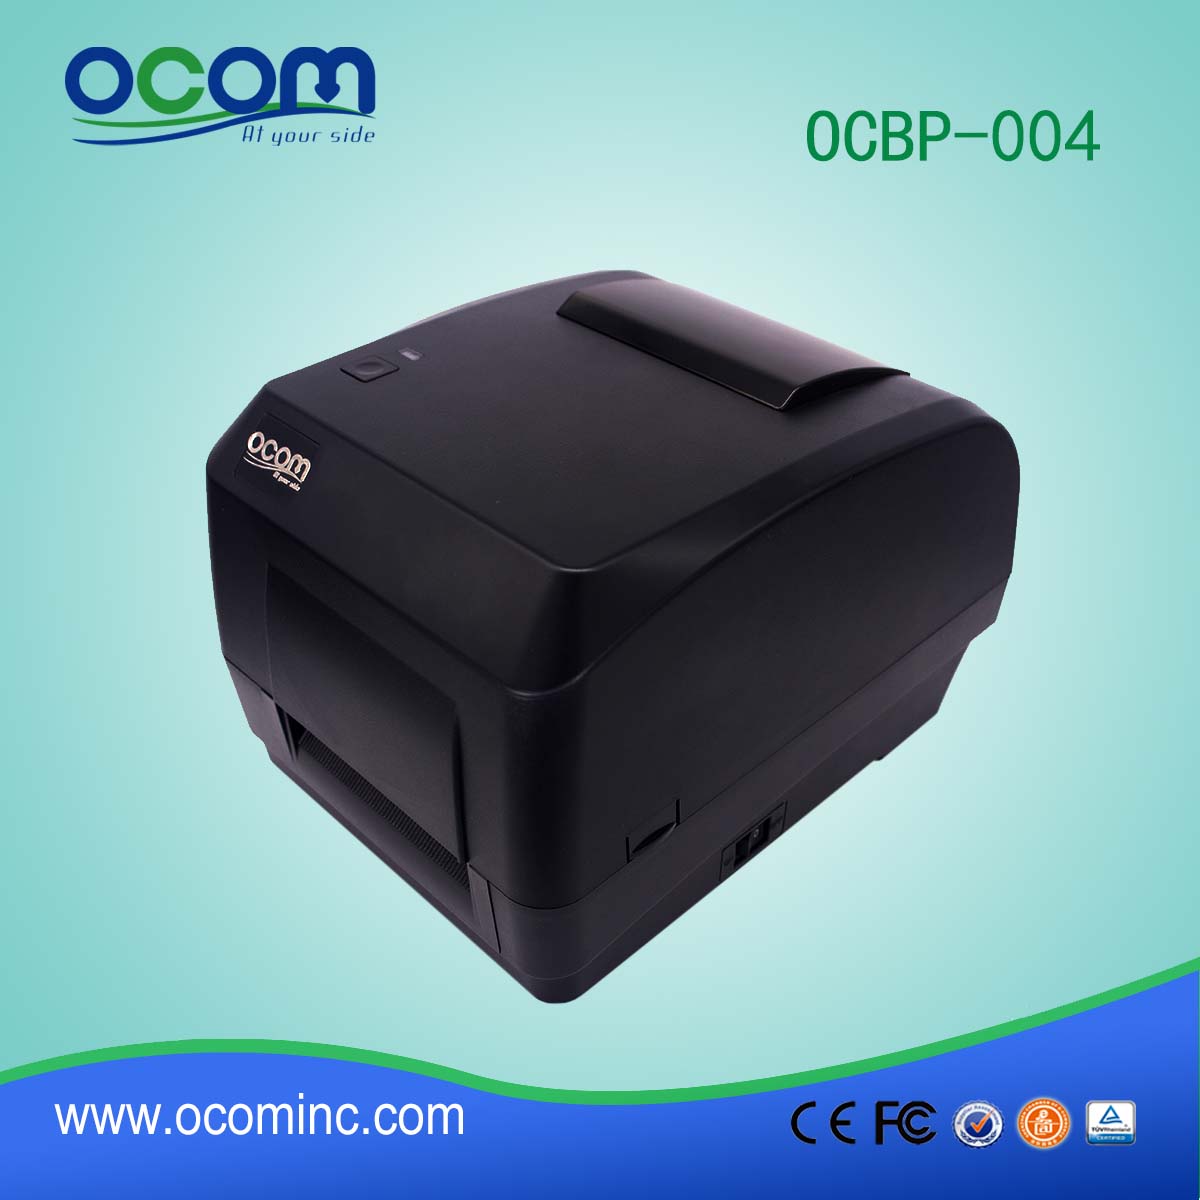 OCBP-004--2016 novo design de alta qualidade impressora de etiquetas térmica, impressora de etiquetas térmica, impressora térmica rótulo